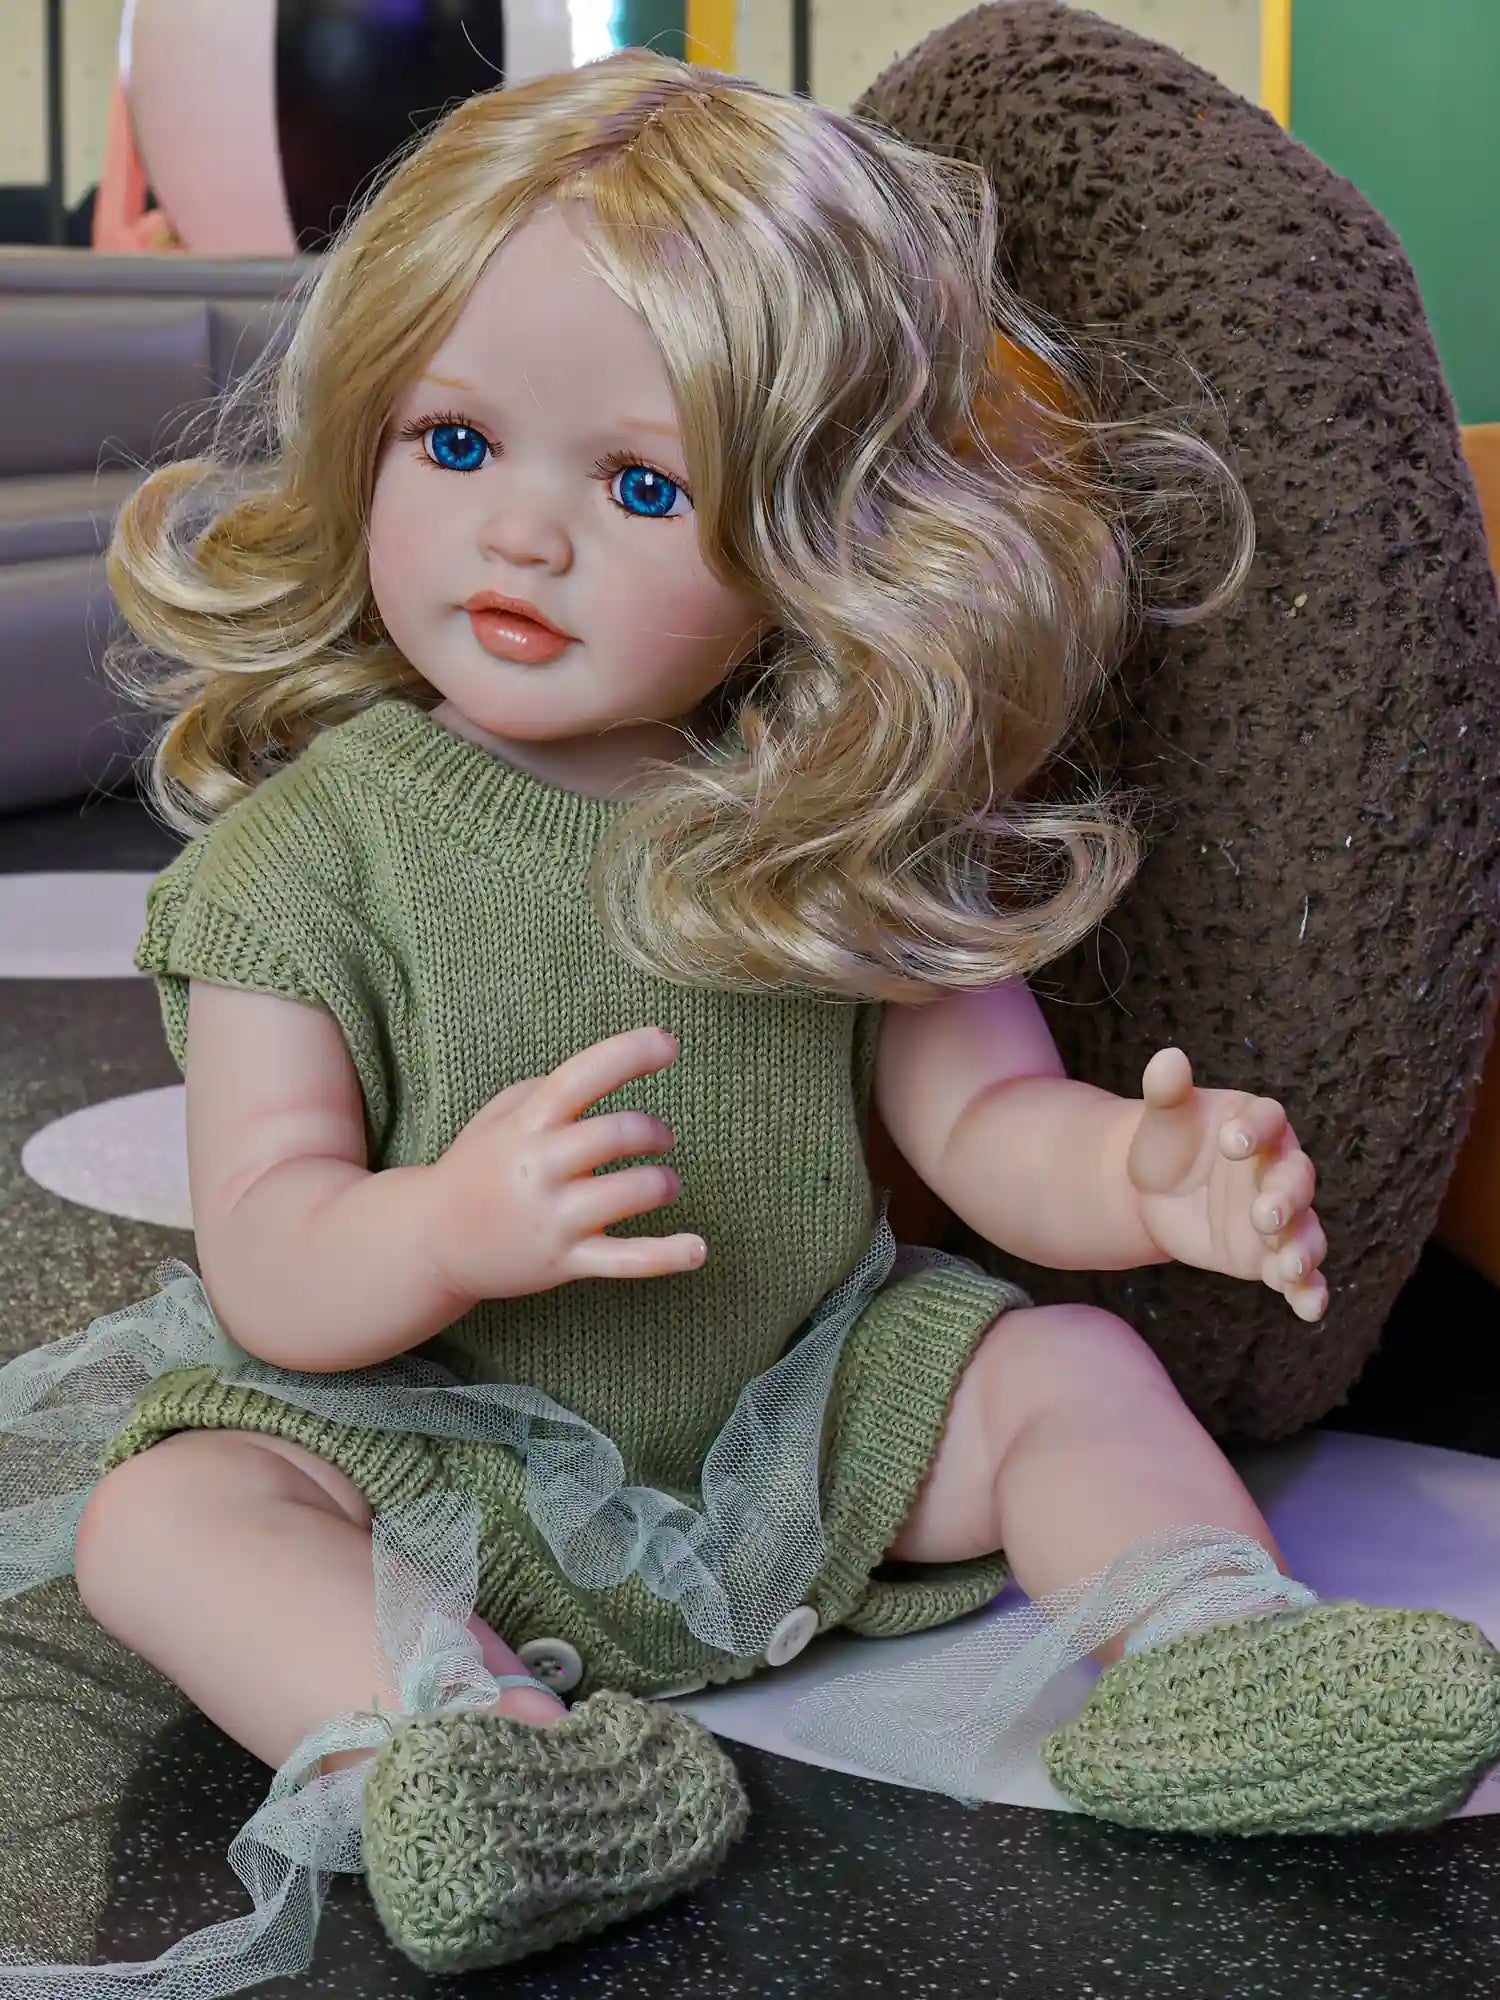 Chimidoll - Niedliche Kleinkindpuppe mit grünem Outfit, gelben Haaren und blauen Augen.